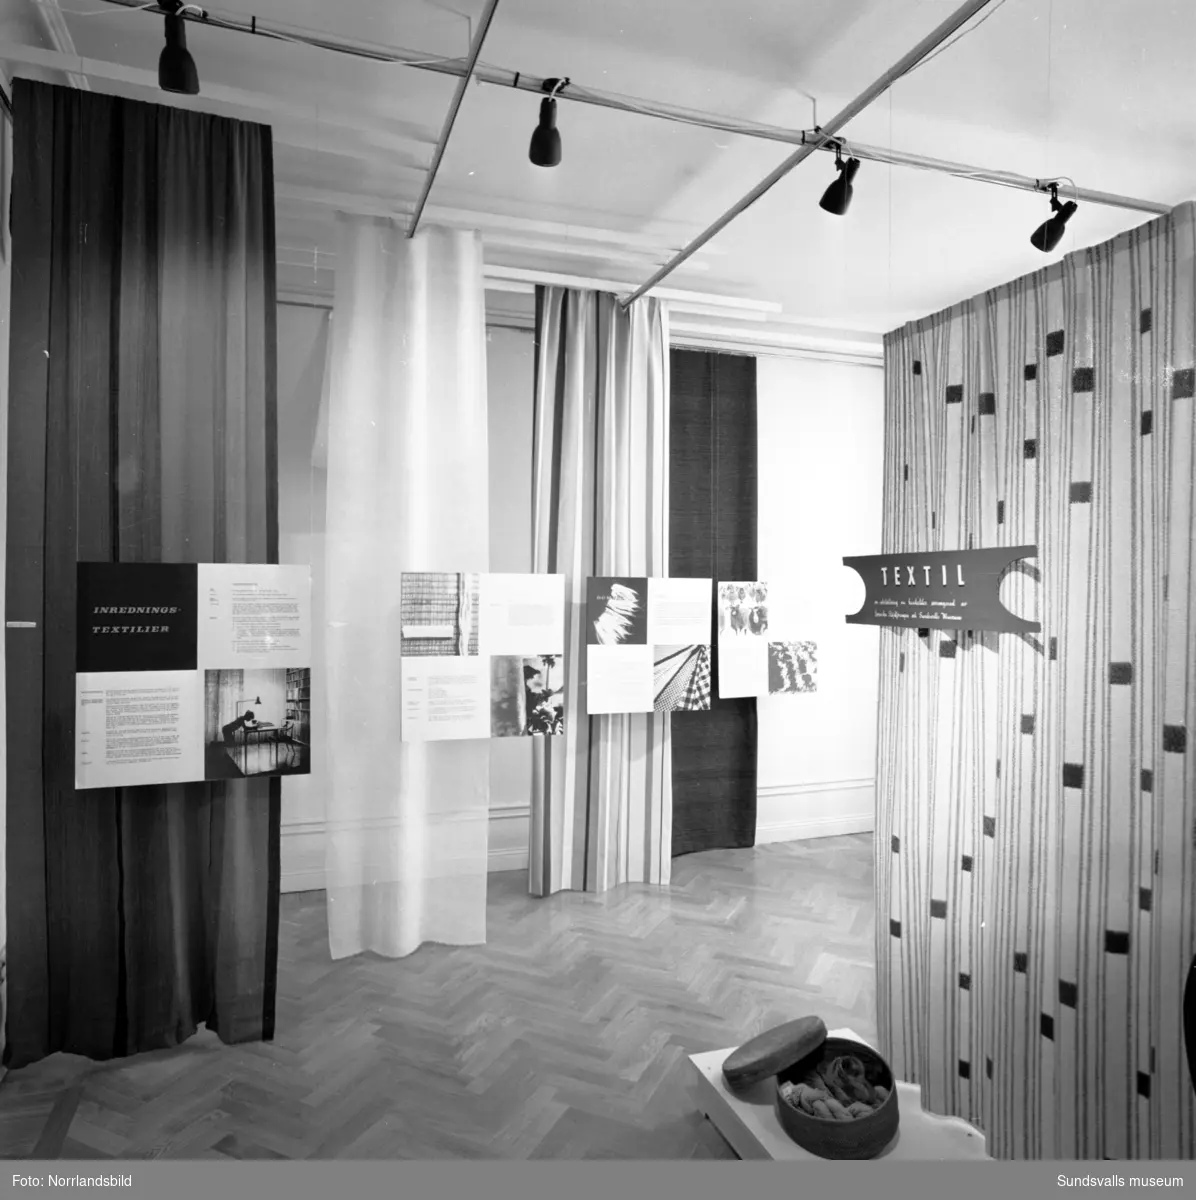 Textil - en utställning arrangerad av Svenska slöjdföreningen och Sundsvalls museum.